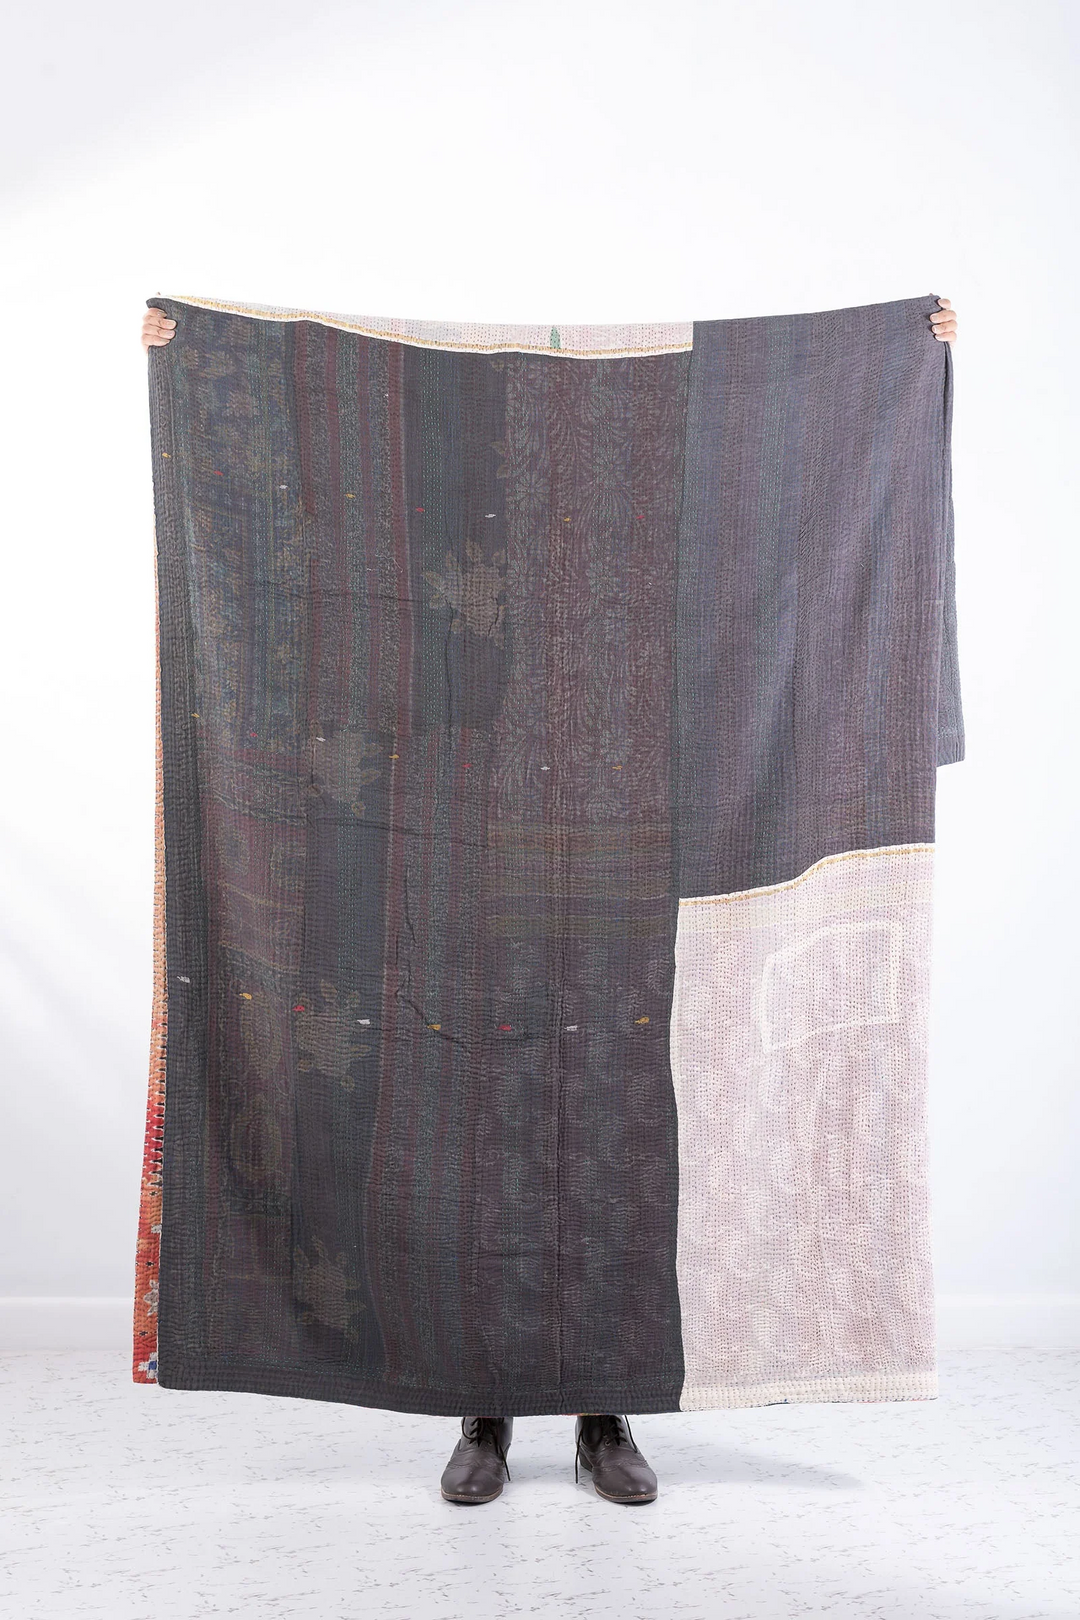 Vintage Cotton Kantha Bedcover -Multi -